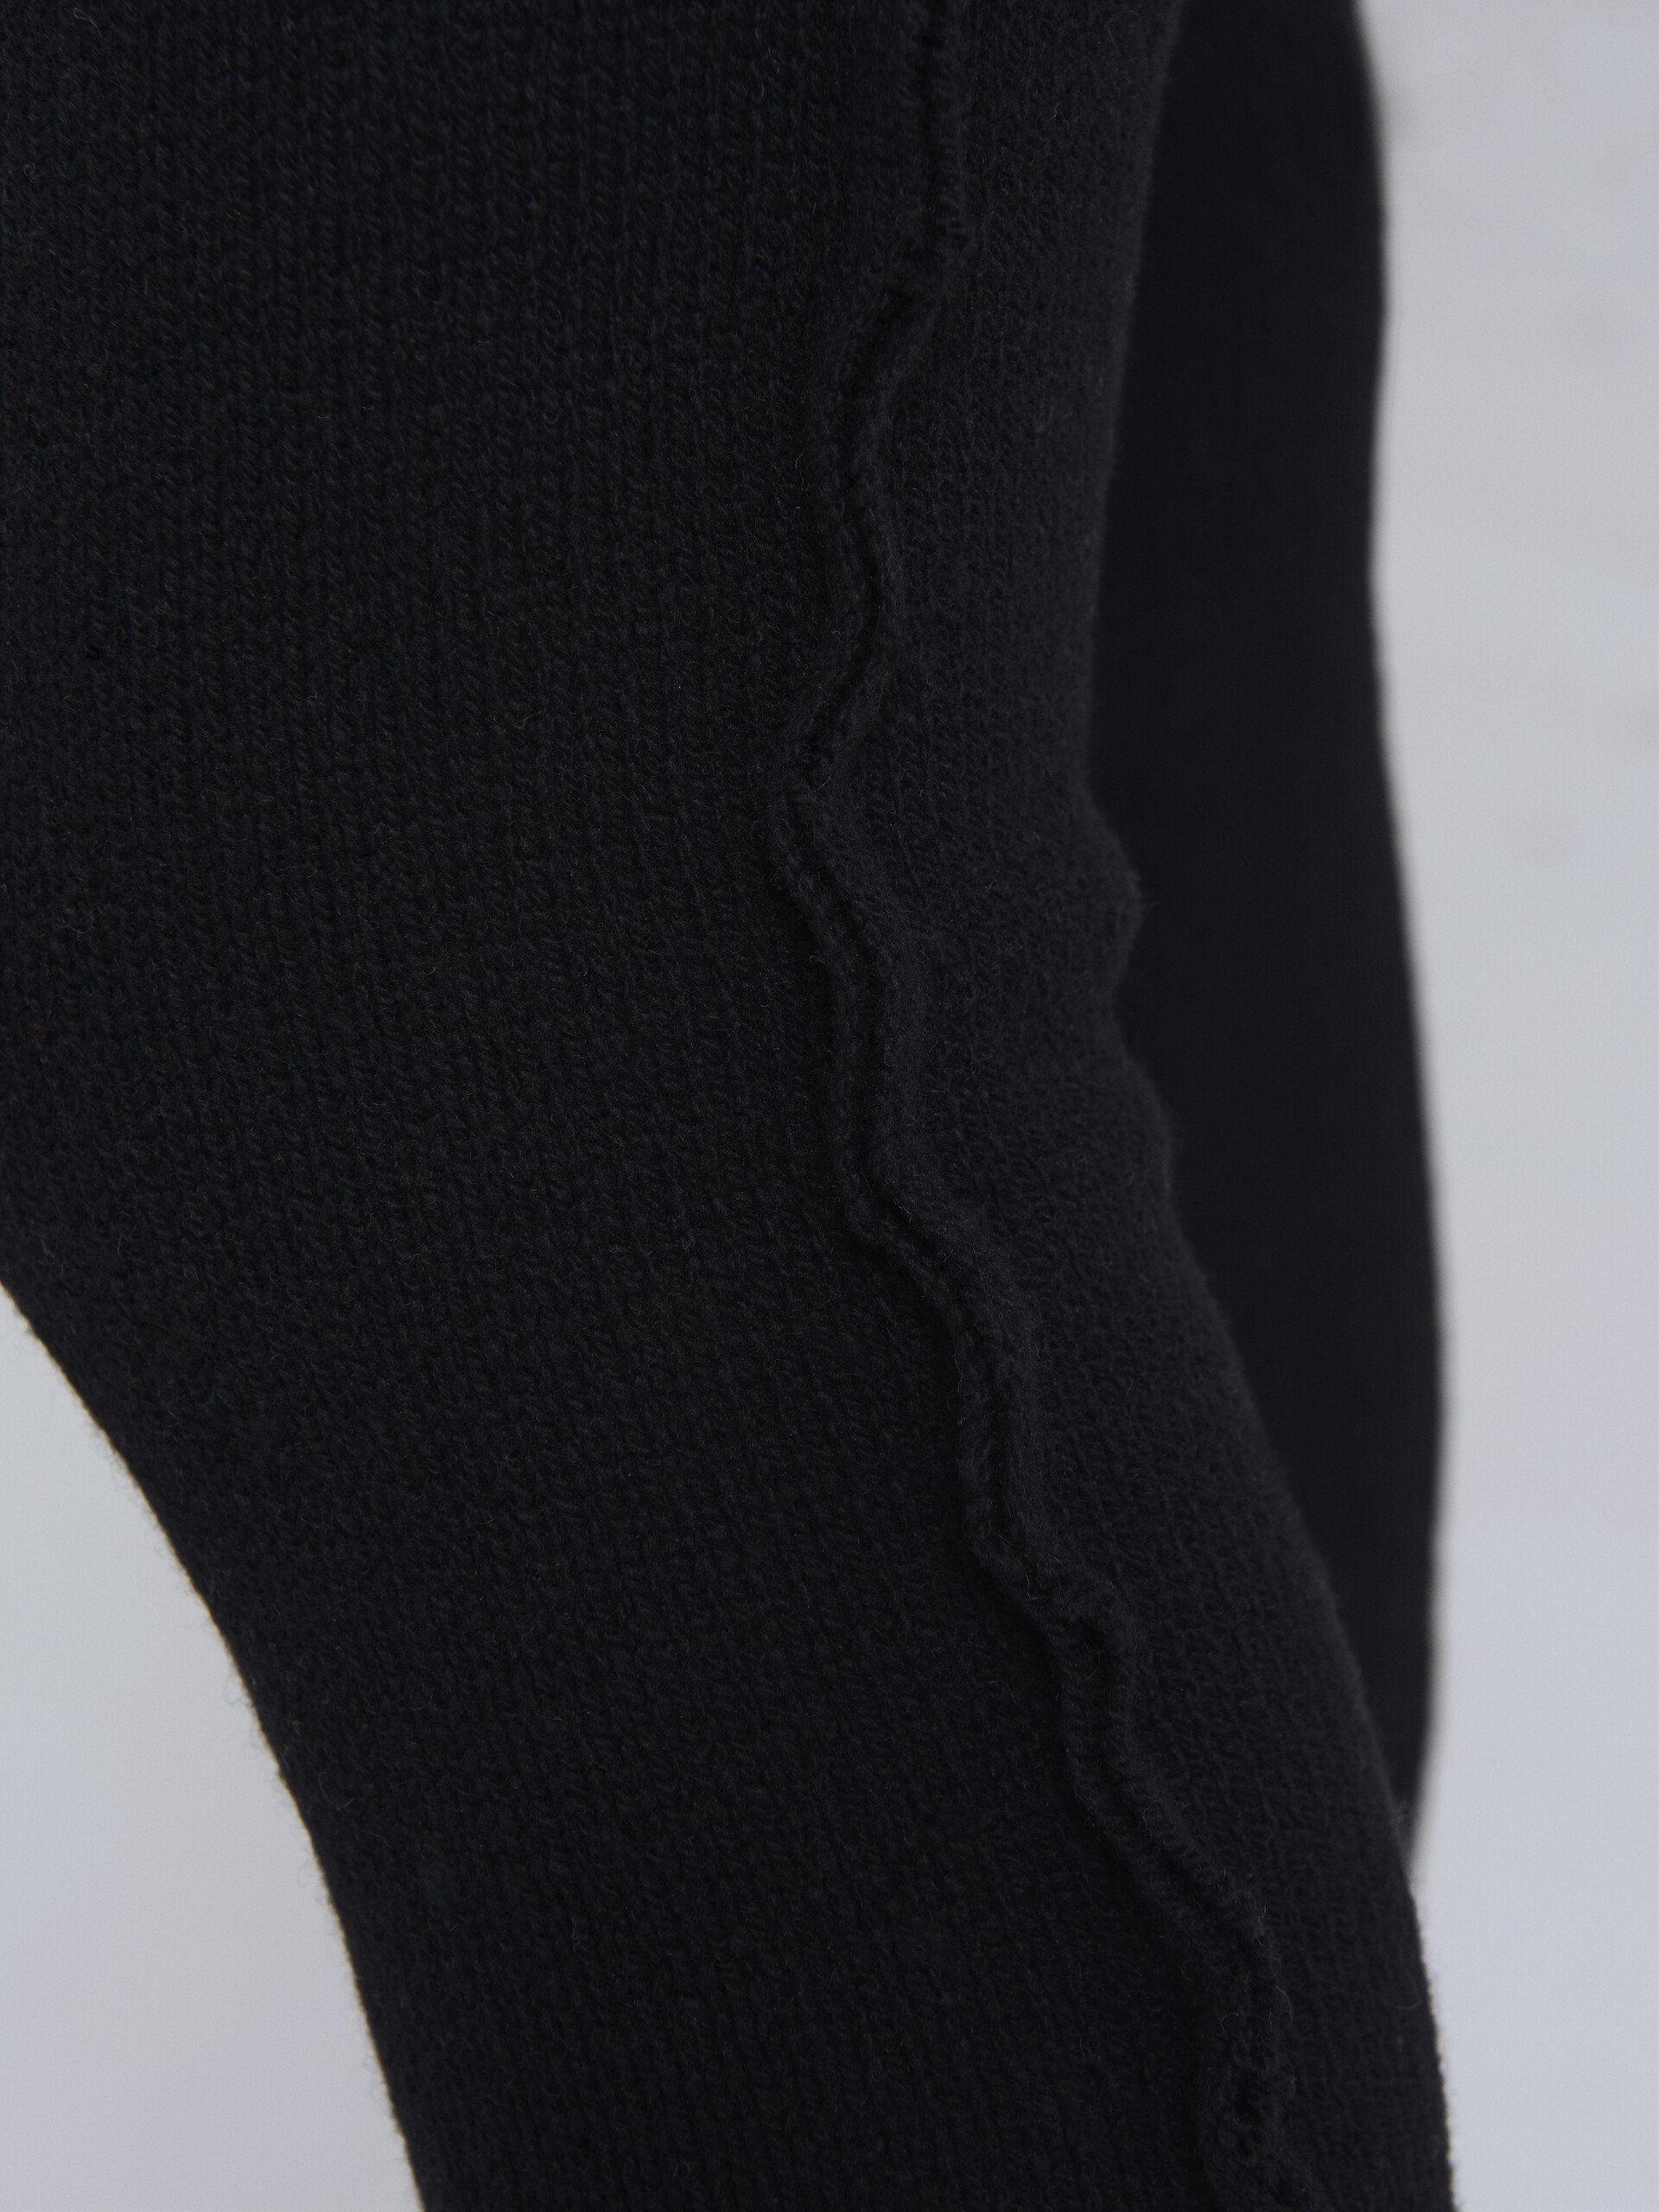 Leggings in cashmere riciclato nero - Pantaloni - Image 4